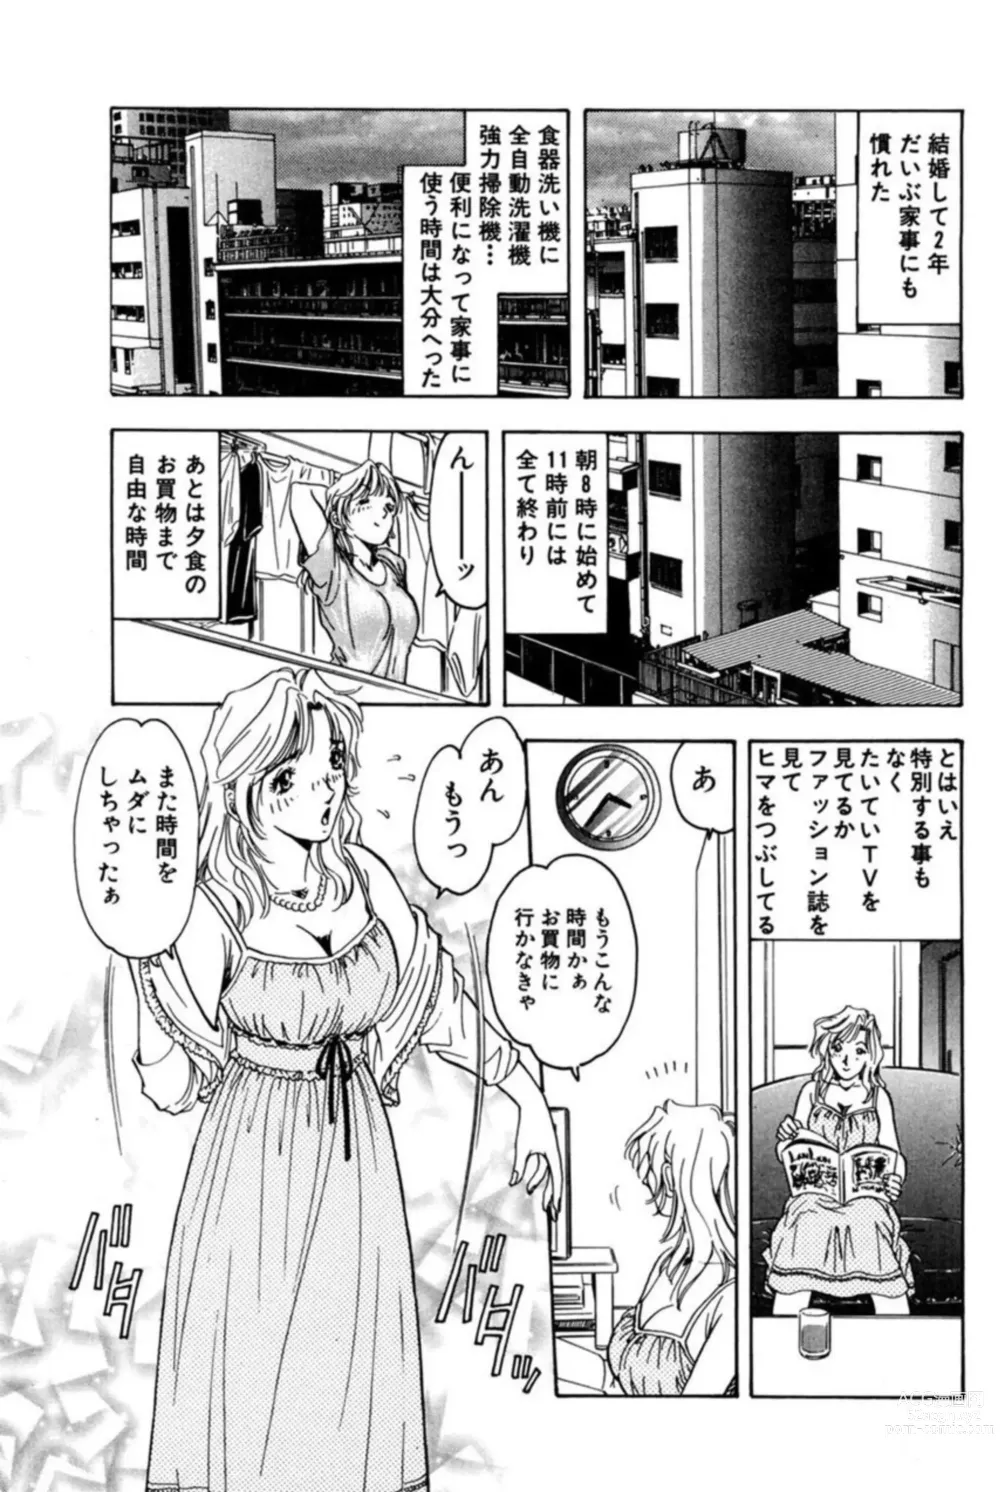 Page 7 of manga Nu meru Hitodzuma wa Aratana Shigeki o Sagashite Motomeru 1